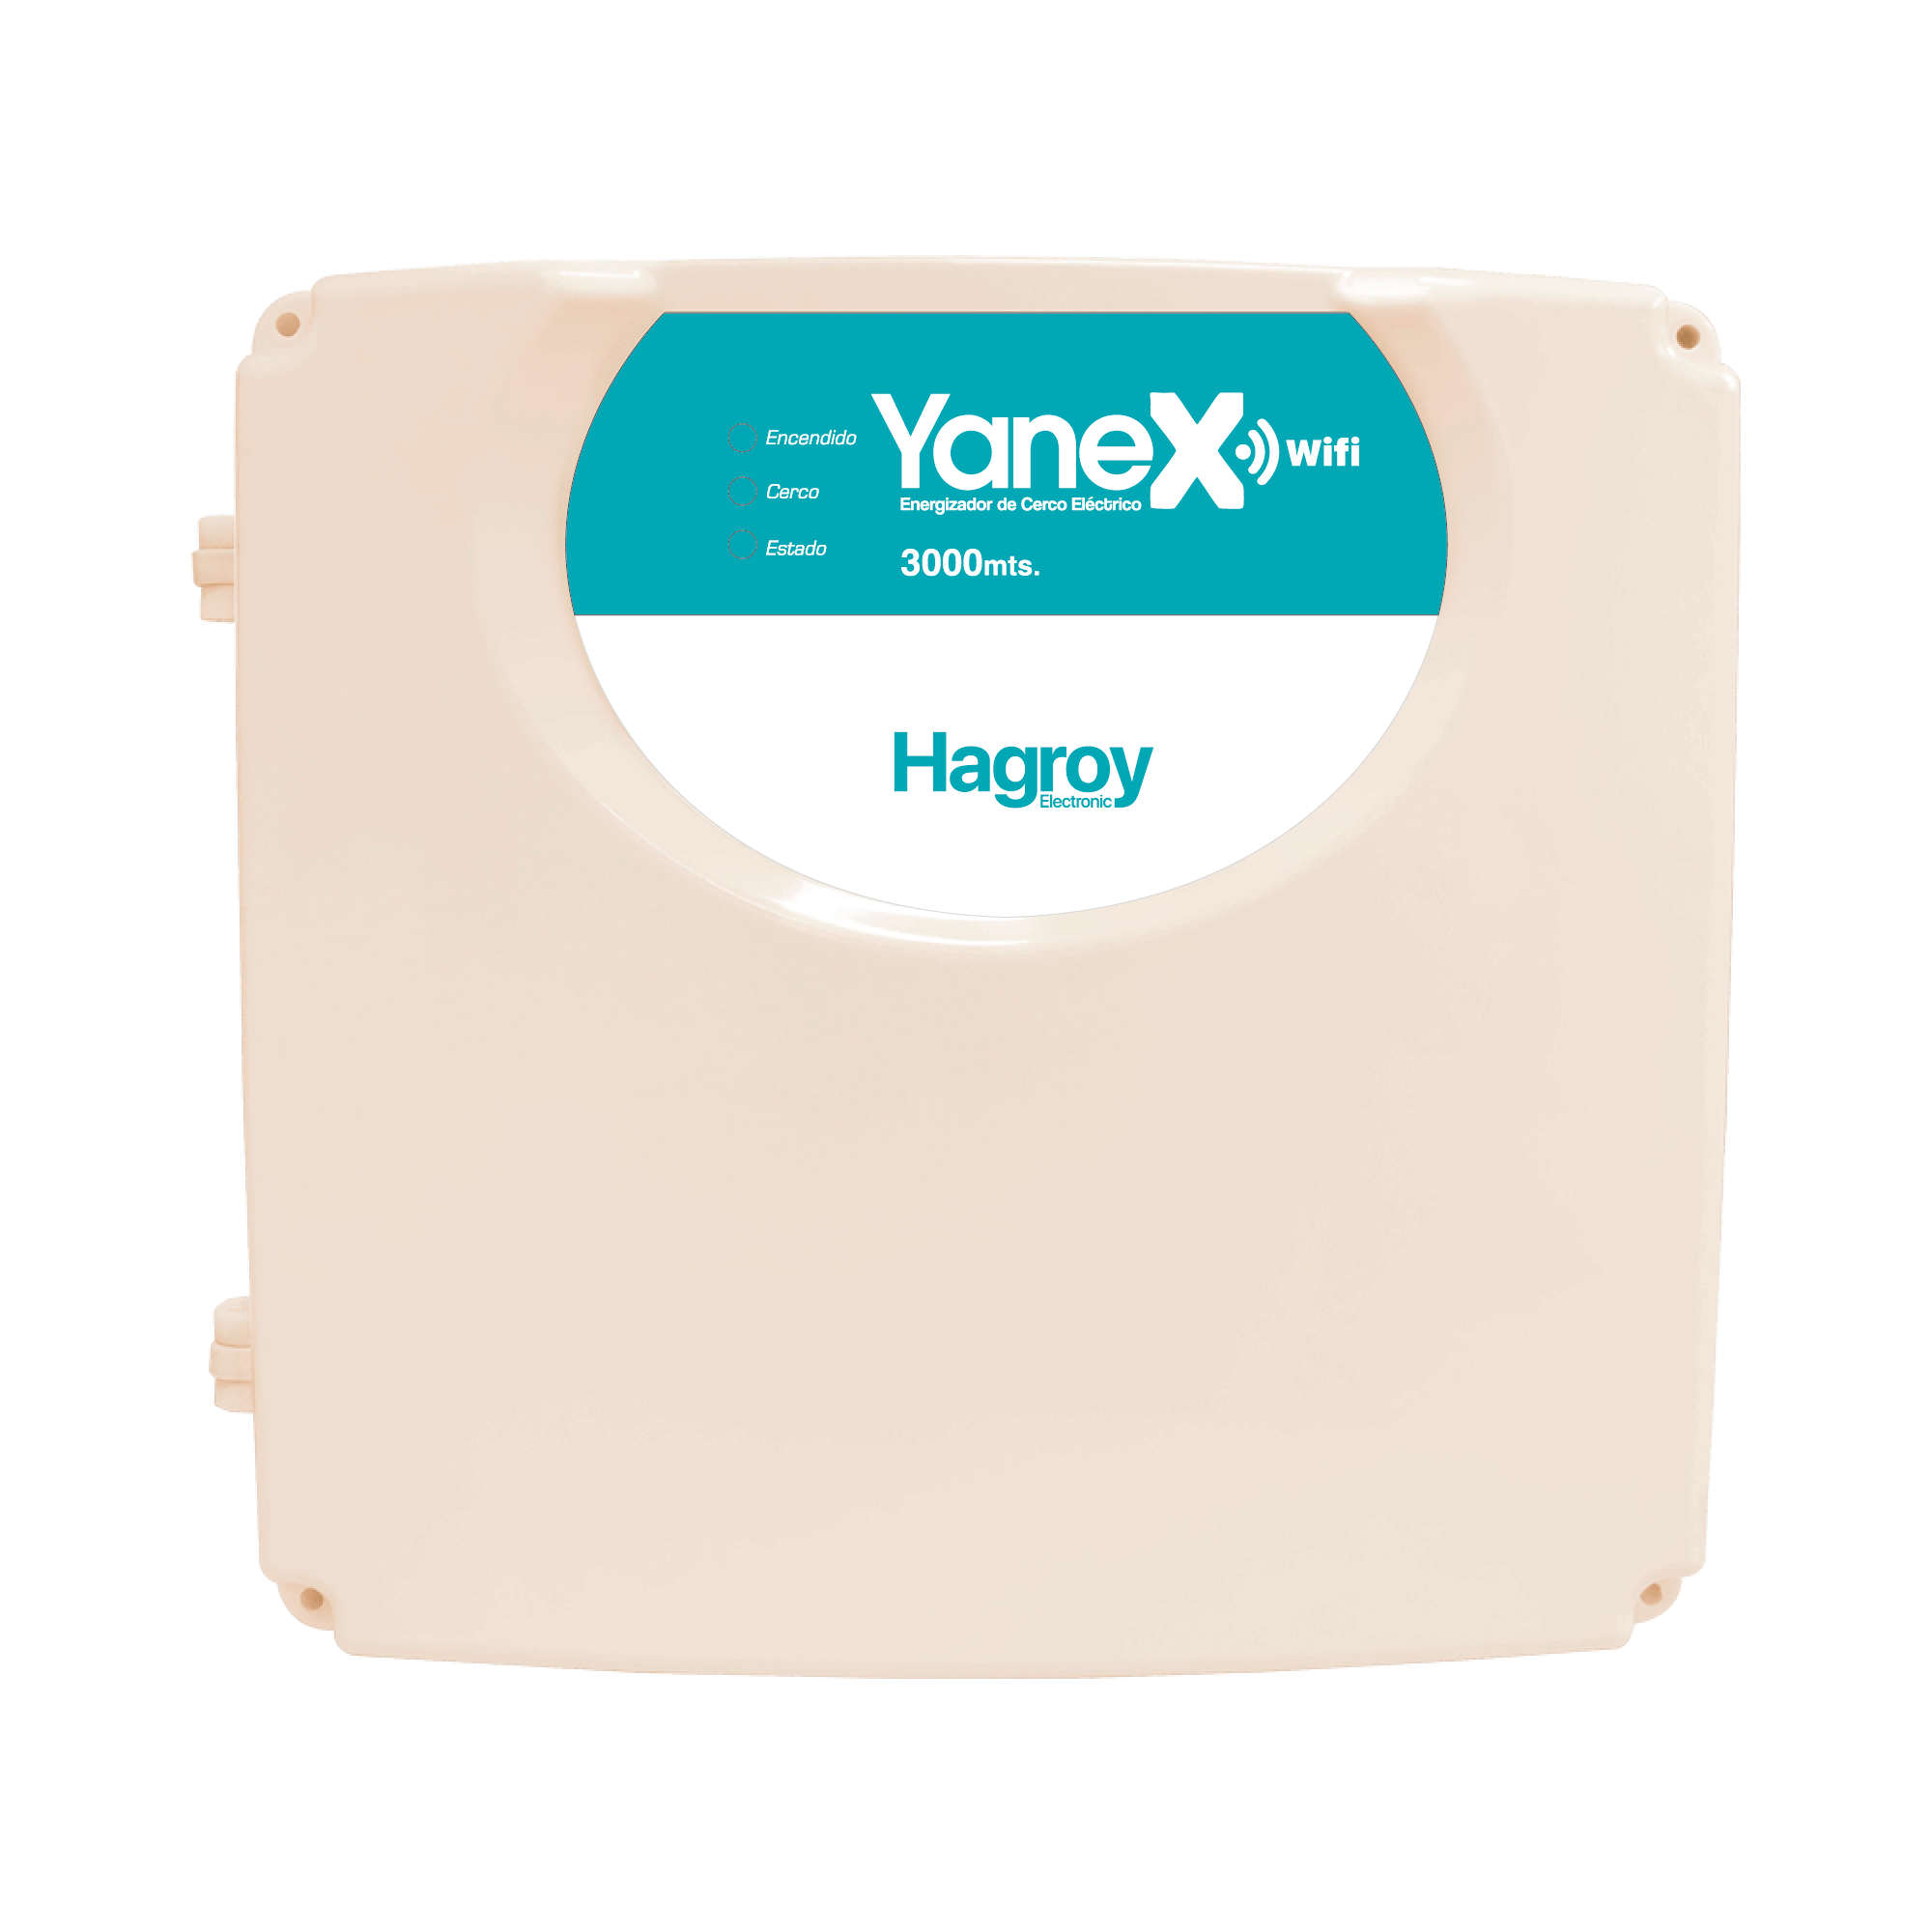 Energizador serie Yanex, energiza hasta 3000m gestion via WiFi APP iHAGROY HG-YANEX-WIFI.